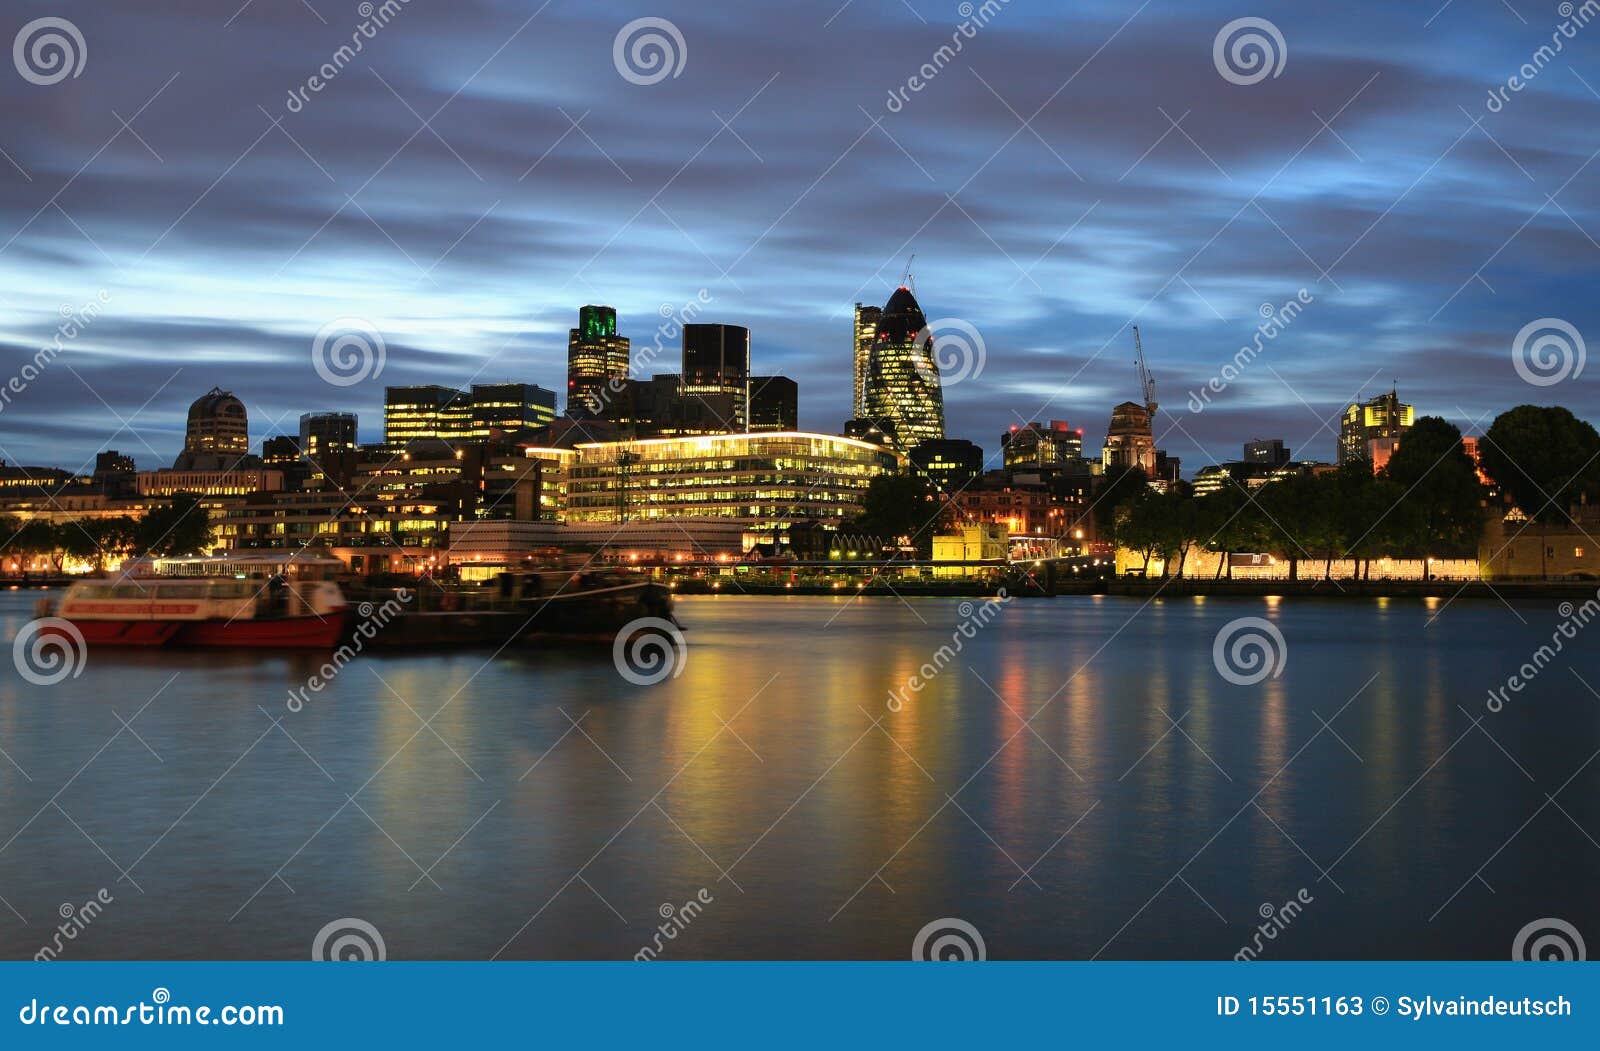 london city at night